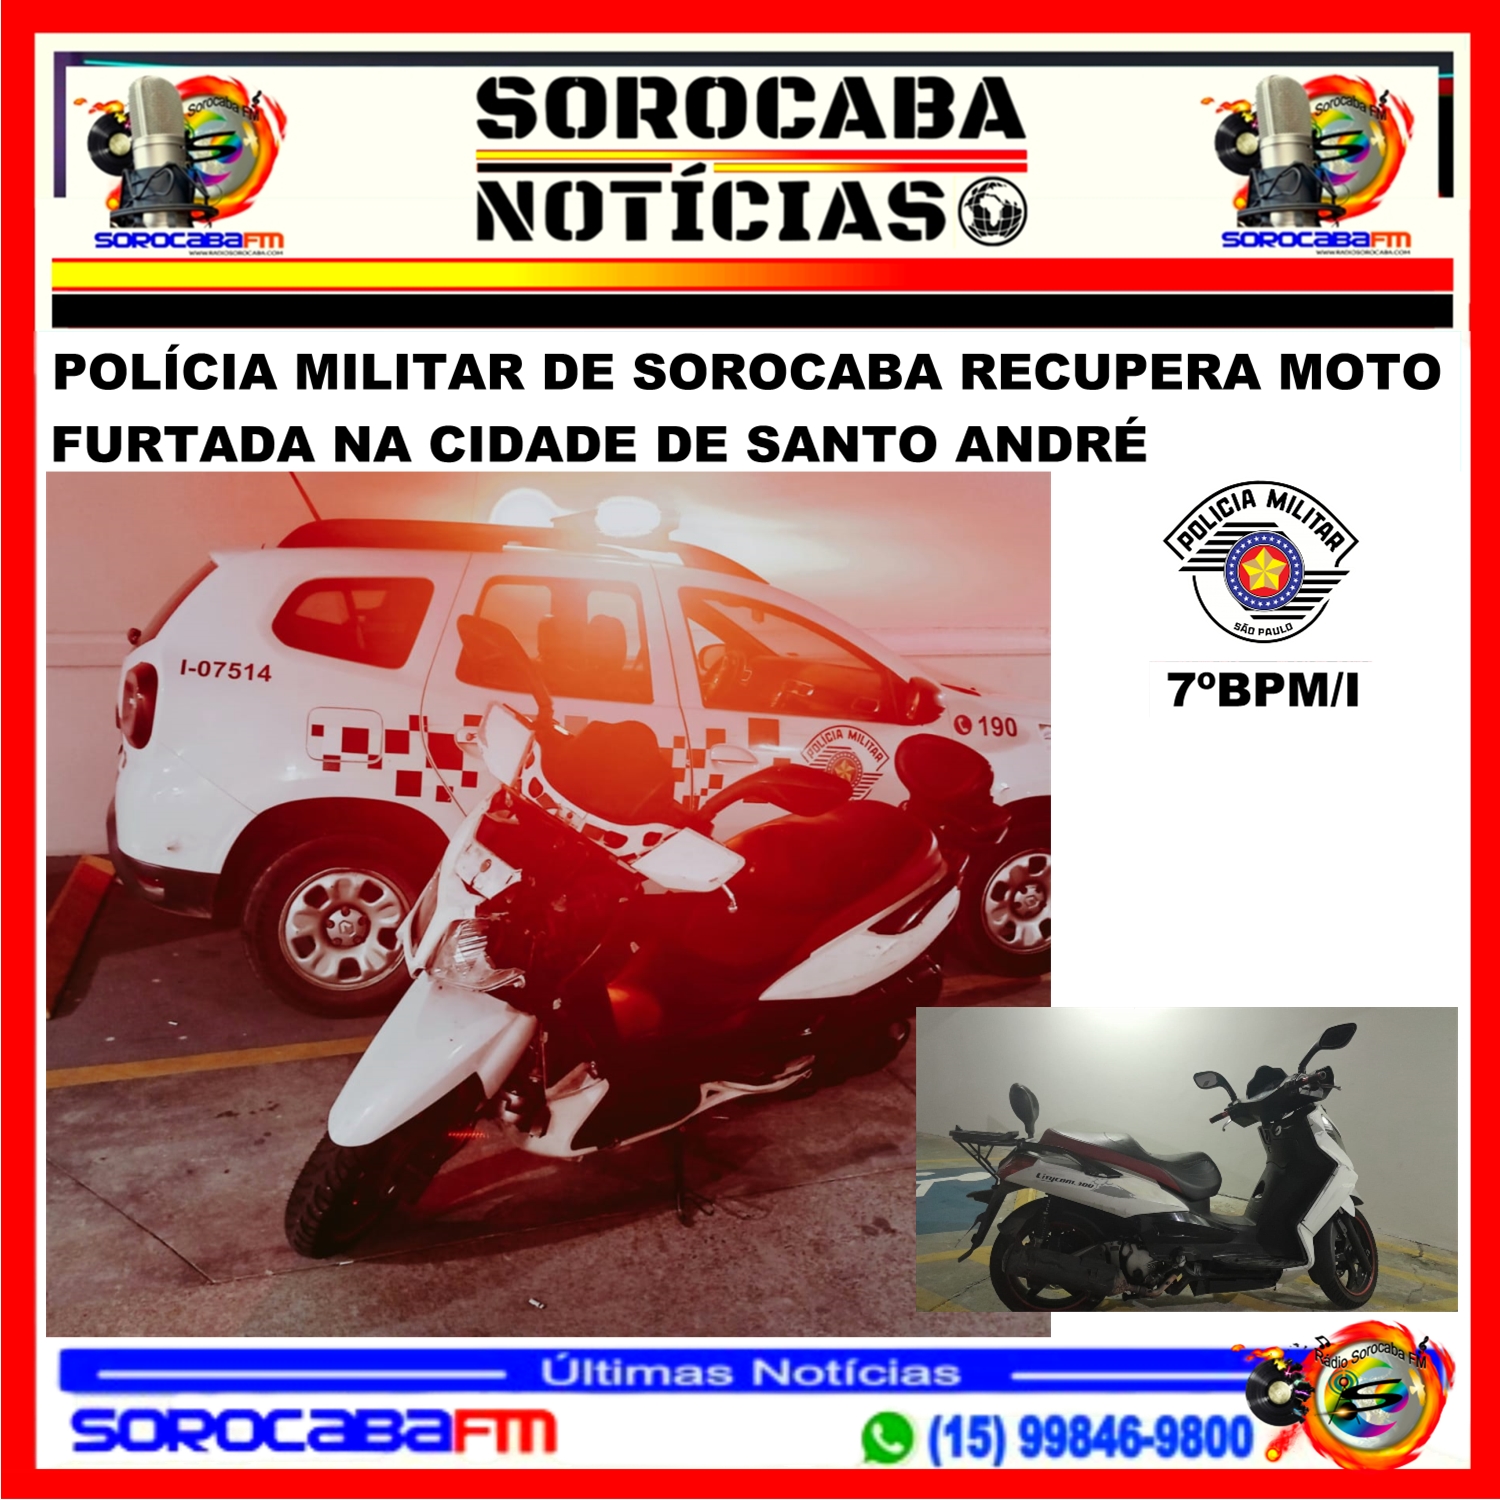 POLÍCIA MILITAR DE SOROCABA RECUPERA MOTO FURTADA NA CIDADE DE SANTO ANDRÉ